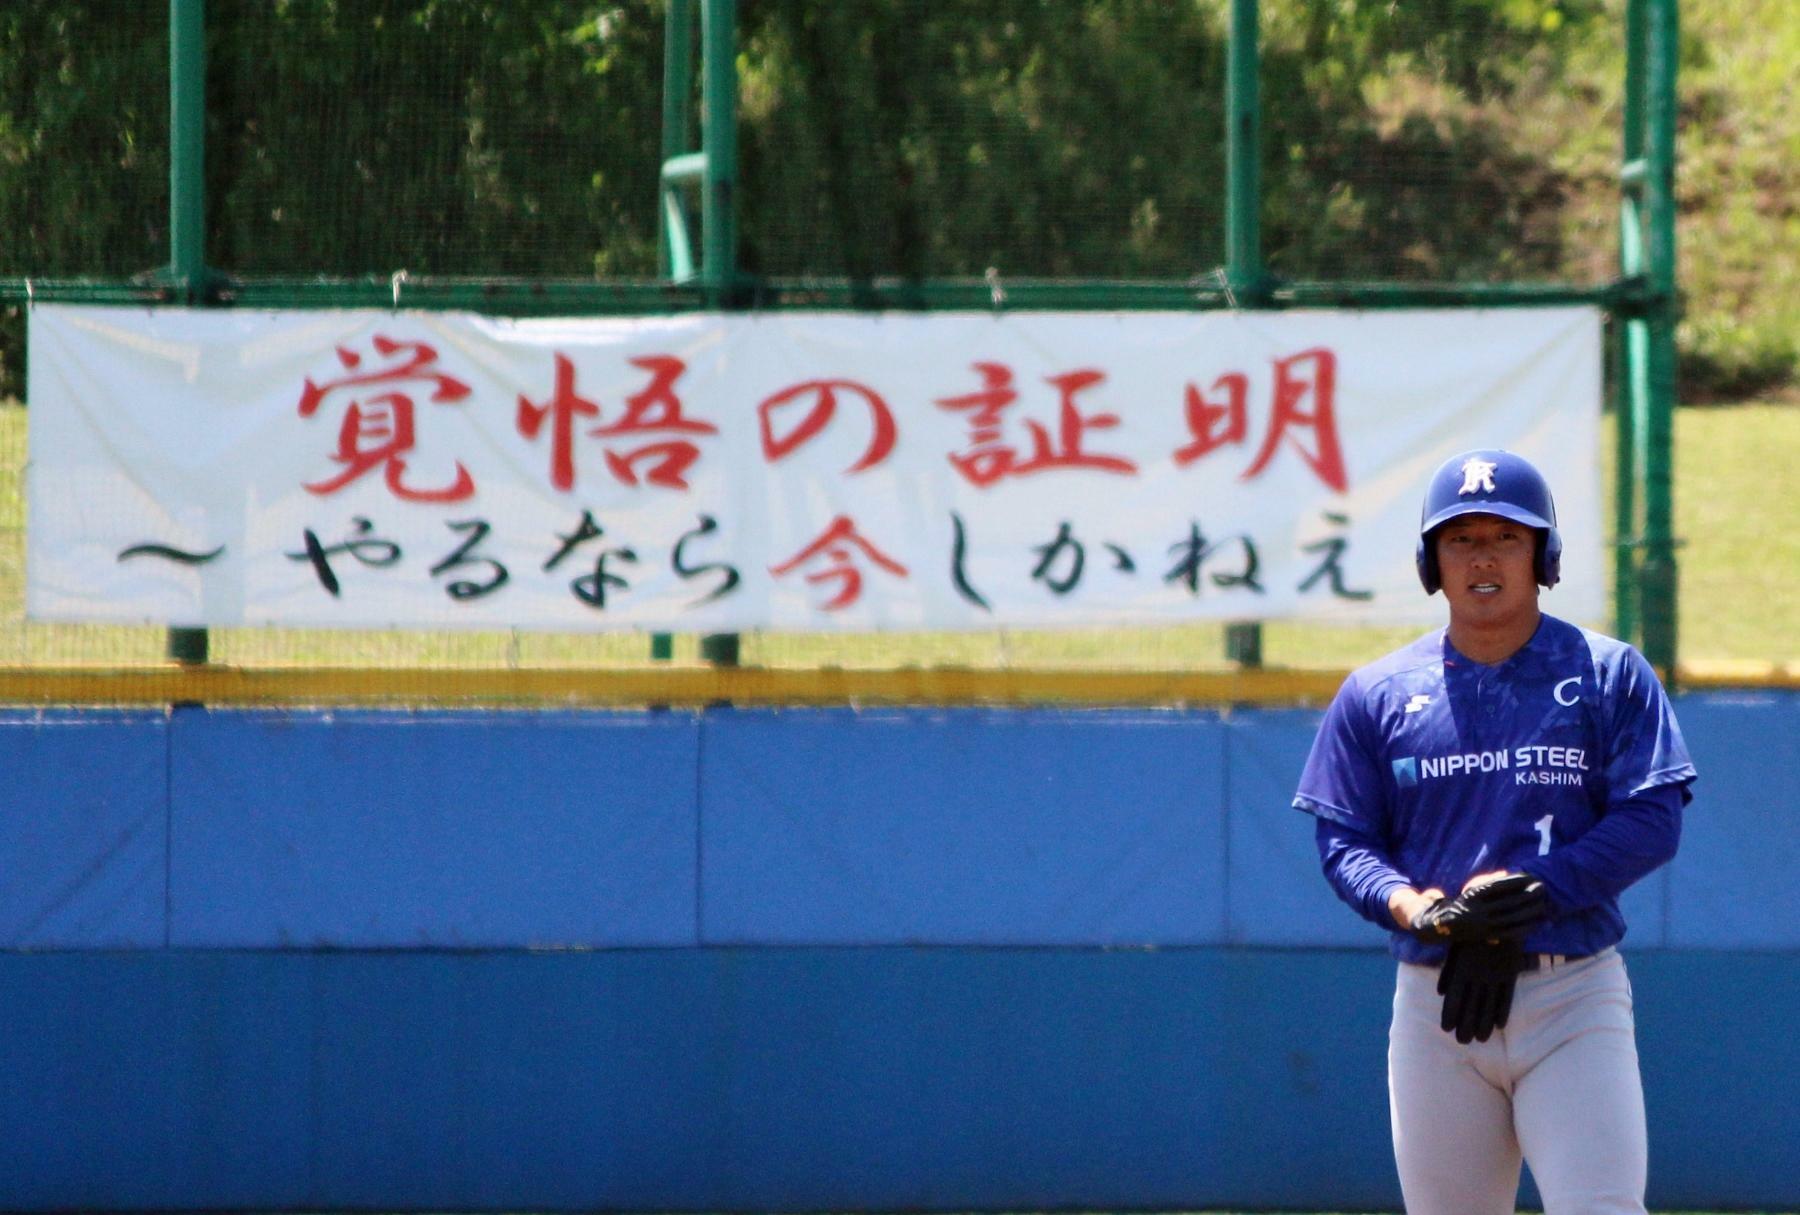 日本製鉄鹿島のキャプテン・生田目忍選手。ことしのチームスローガンを記した横断幕がうしろに見えます。